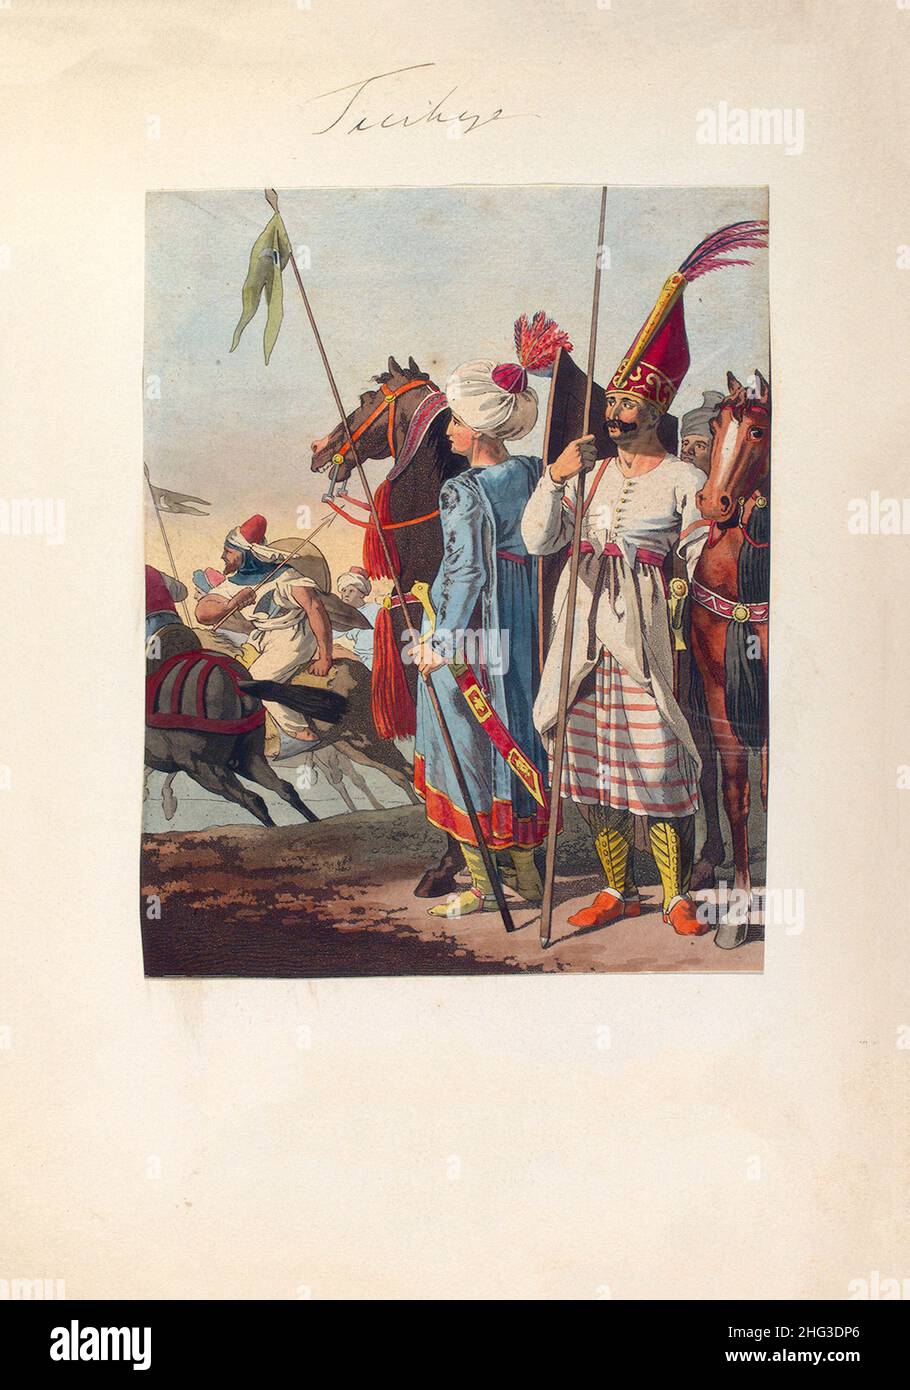 Litografía de la caballería ligera turca asiática del imperio otomano del siglo 17th-18th. 1910 Foto de stock